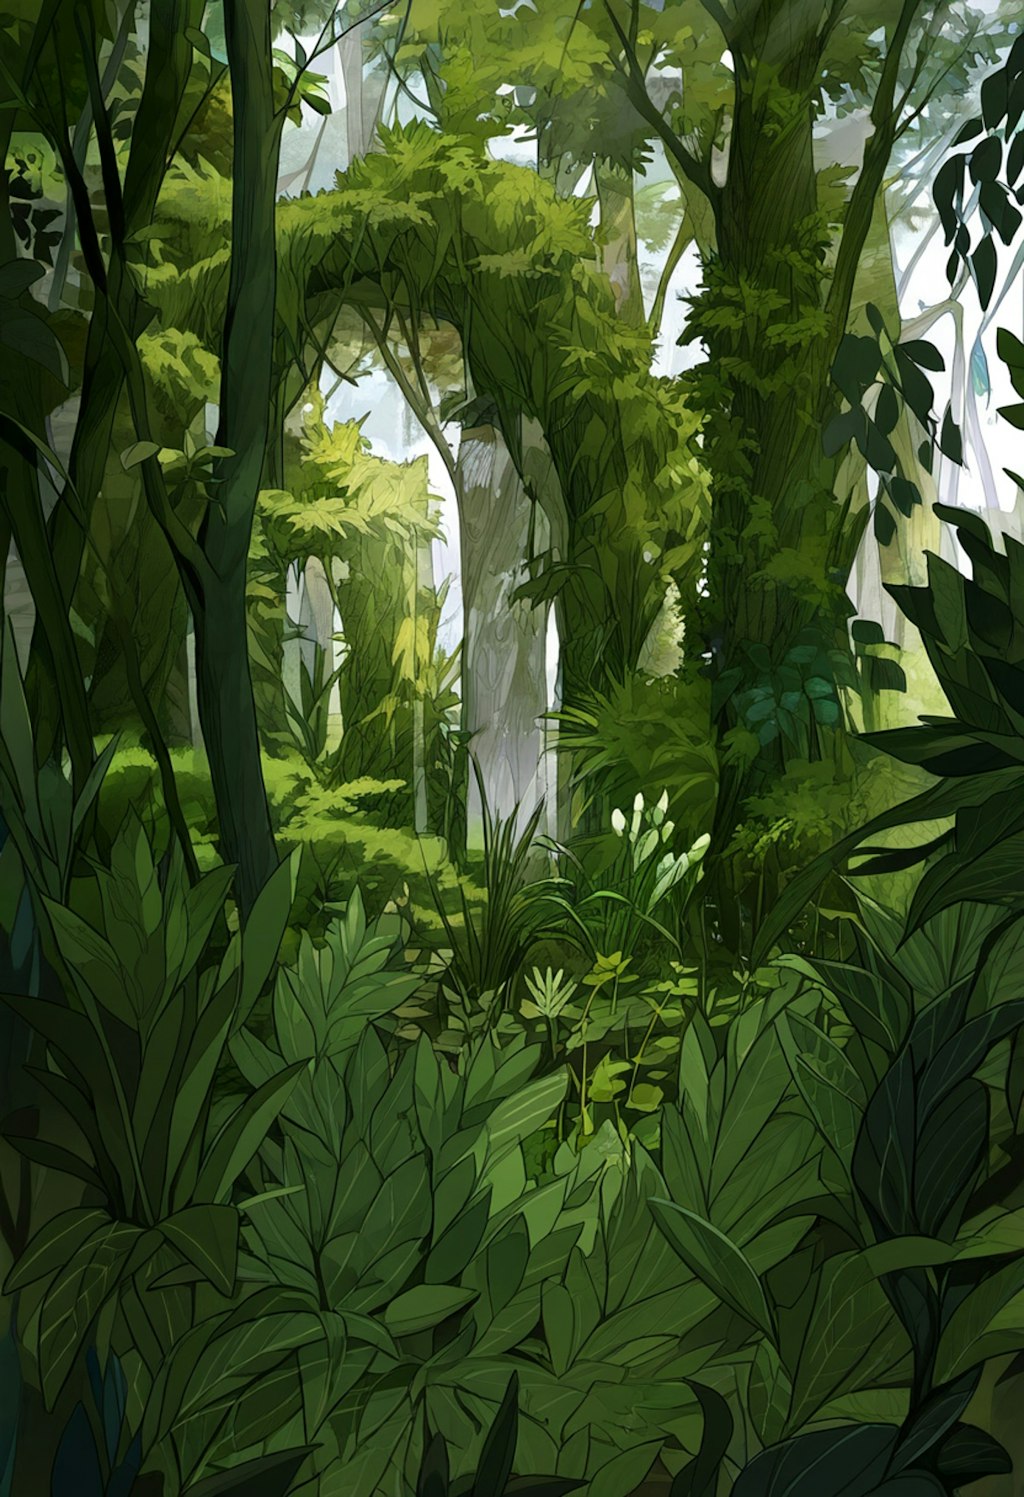 ジャングル